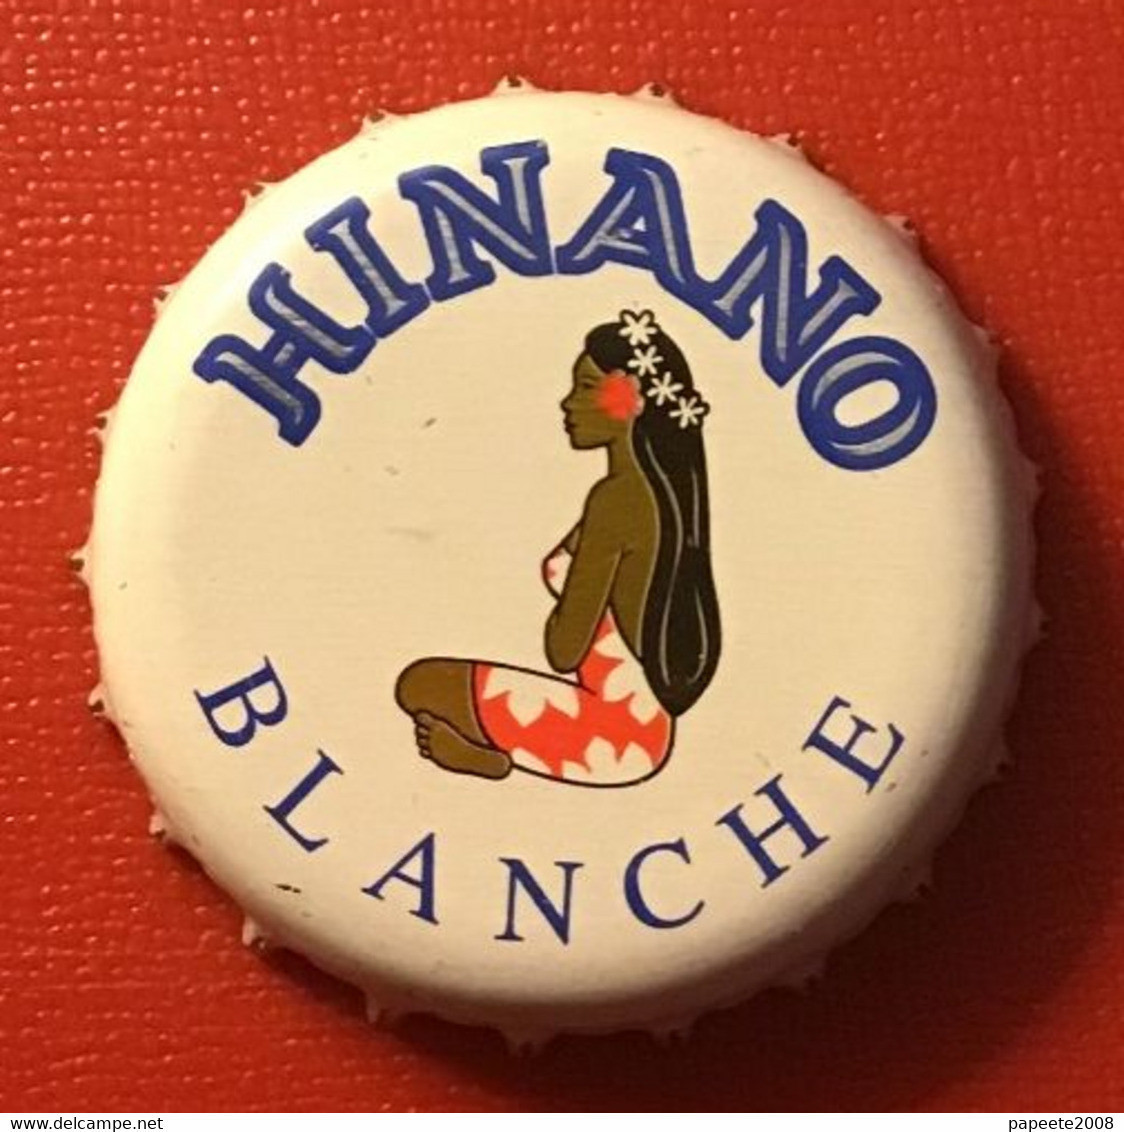 Polynésie Française - Tahiti / Capsule De Hinano " Blanche " - Bière / Janvier 2021 - Bier